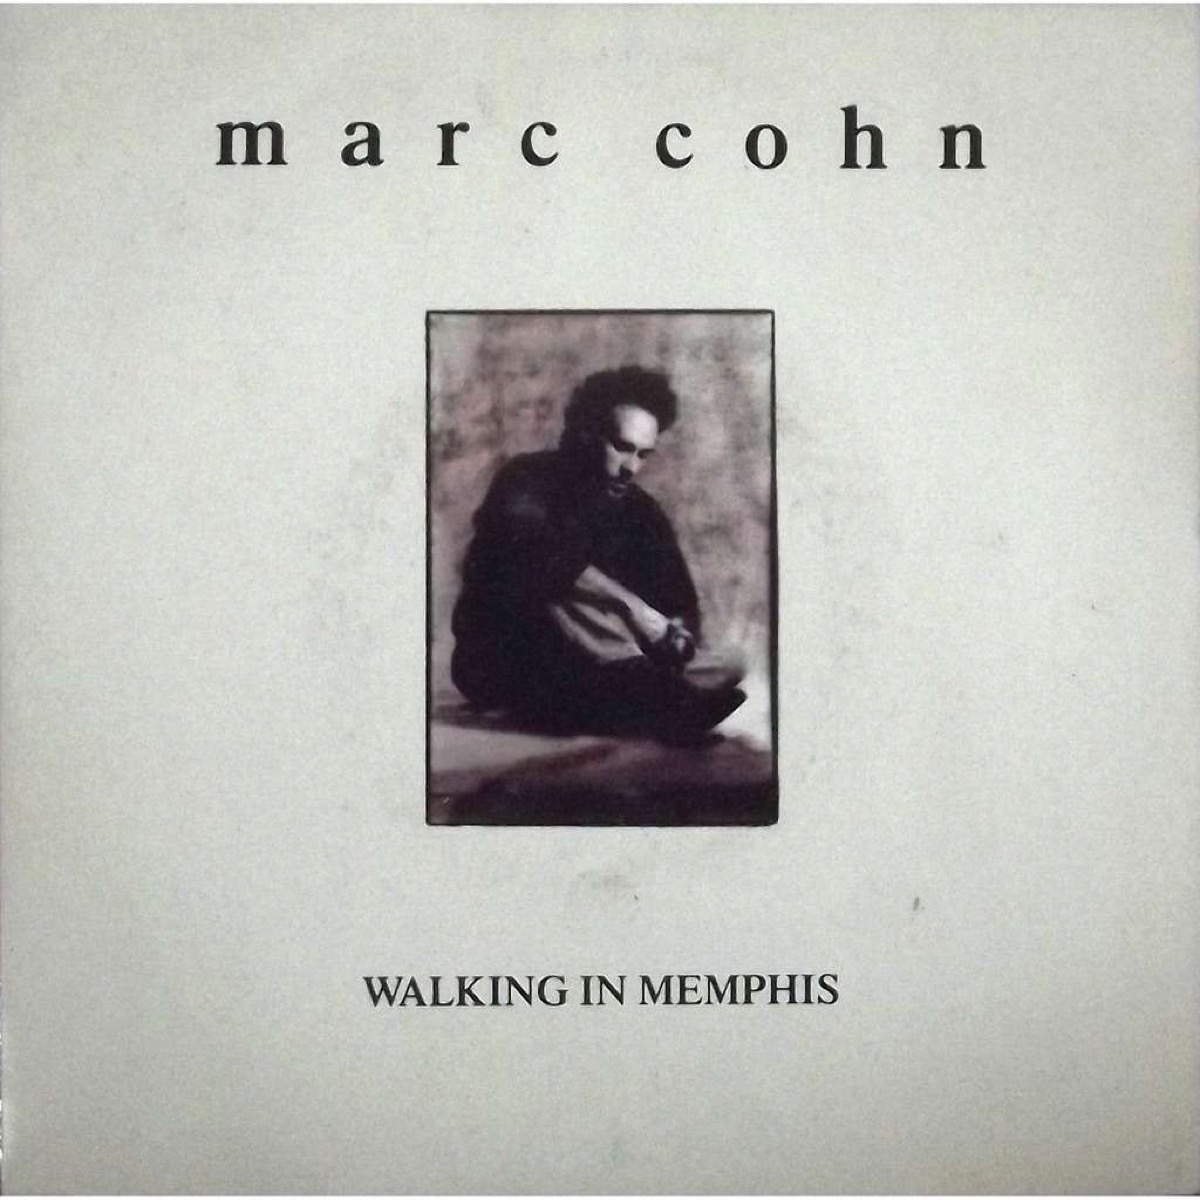 Walking in Memphis by Marc Cohn Best One-Hit Wonders